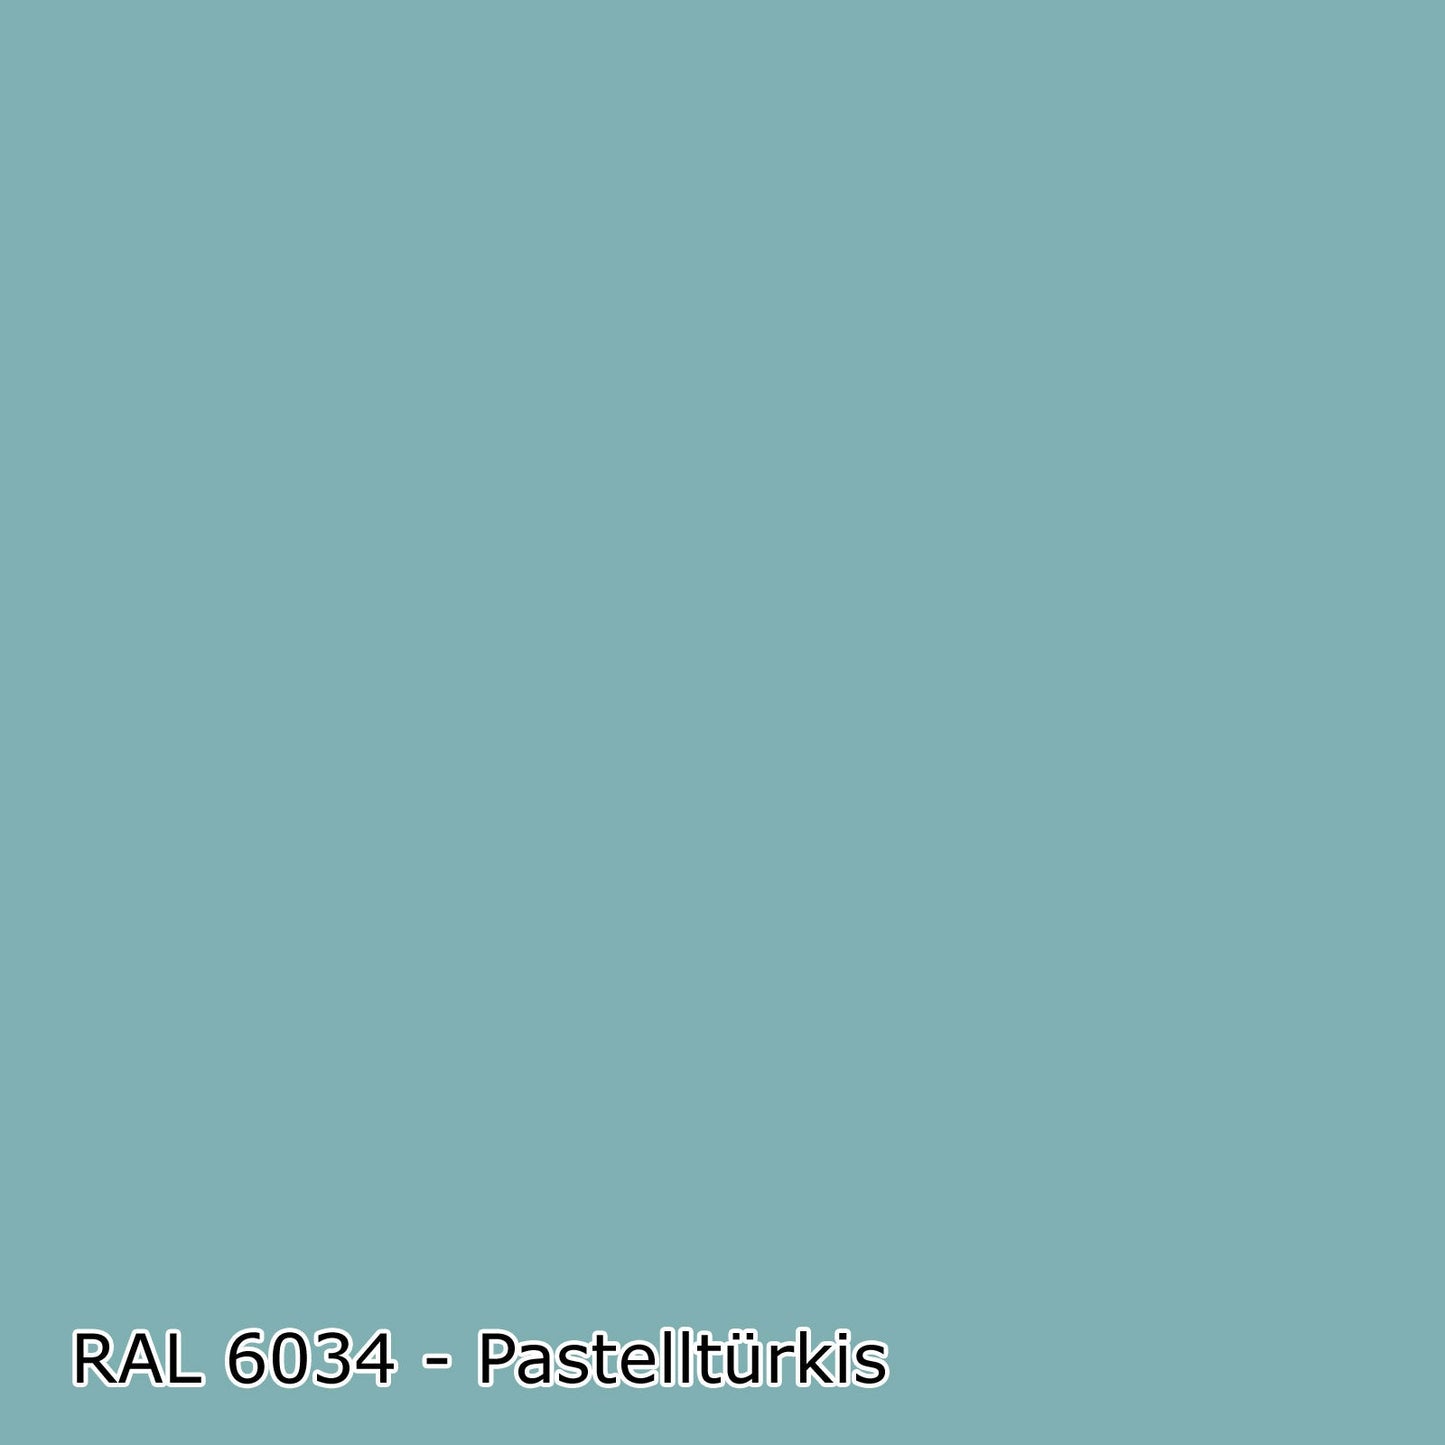 5 L Acryl Fassadenfarbe, RAL Farbwahl - MATT (RAL 6008 - 9018)